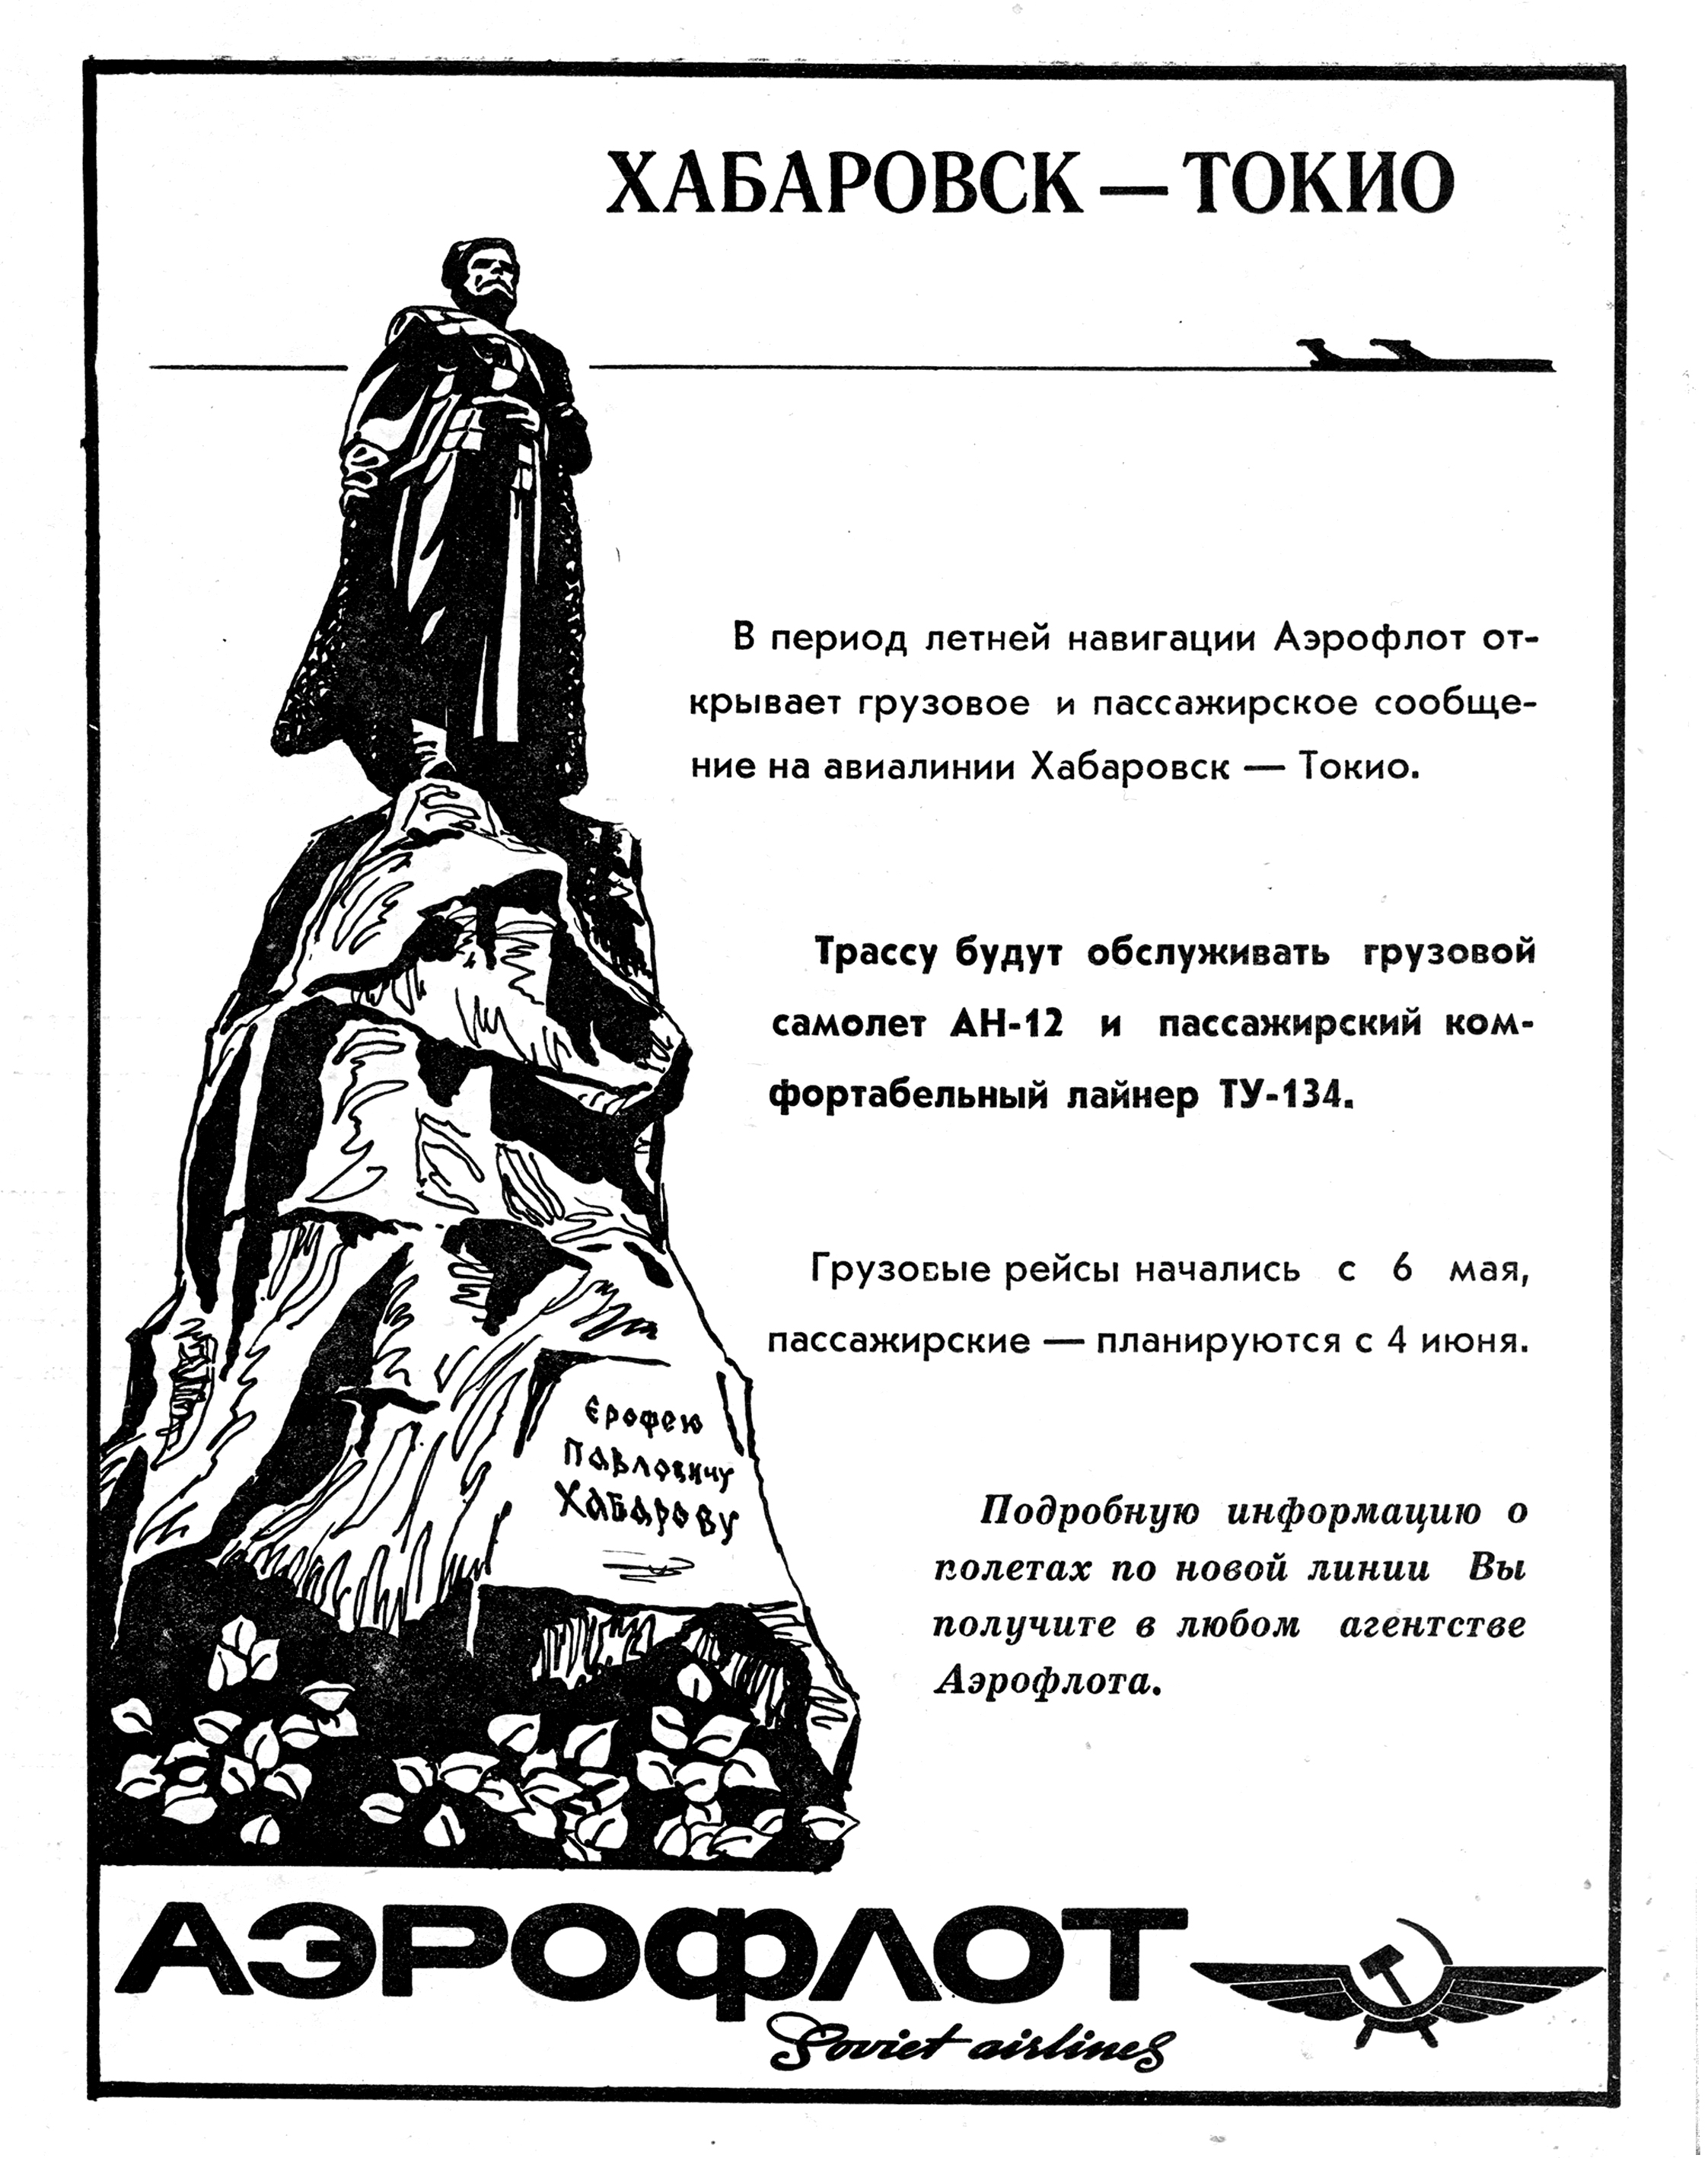 Промолистовка начала полетов по маршруту Хабаровск - Токио 1971 г.